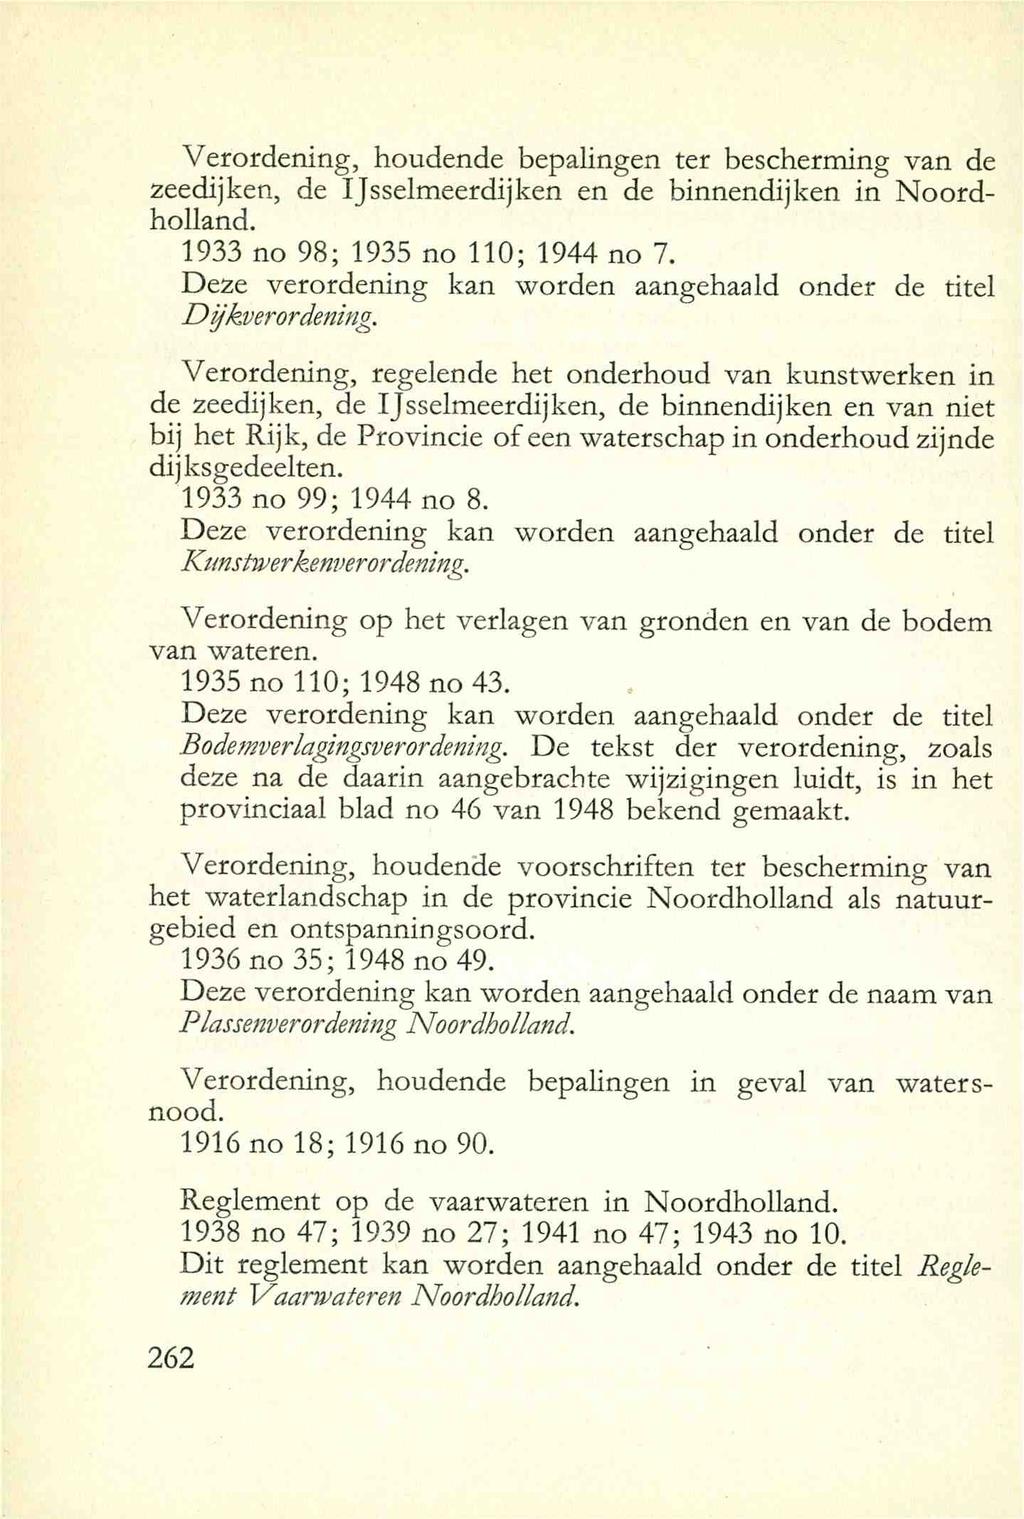 Verordening, houdende bepalingen ter bescherming van de zeedijken, de IJsselmeerdijken en de binnendijken in Noordholland. 1933 no 98; 1935 no 110; 1944 no 7.